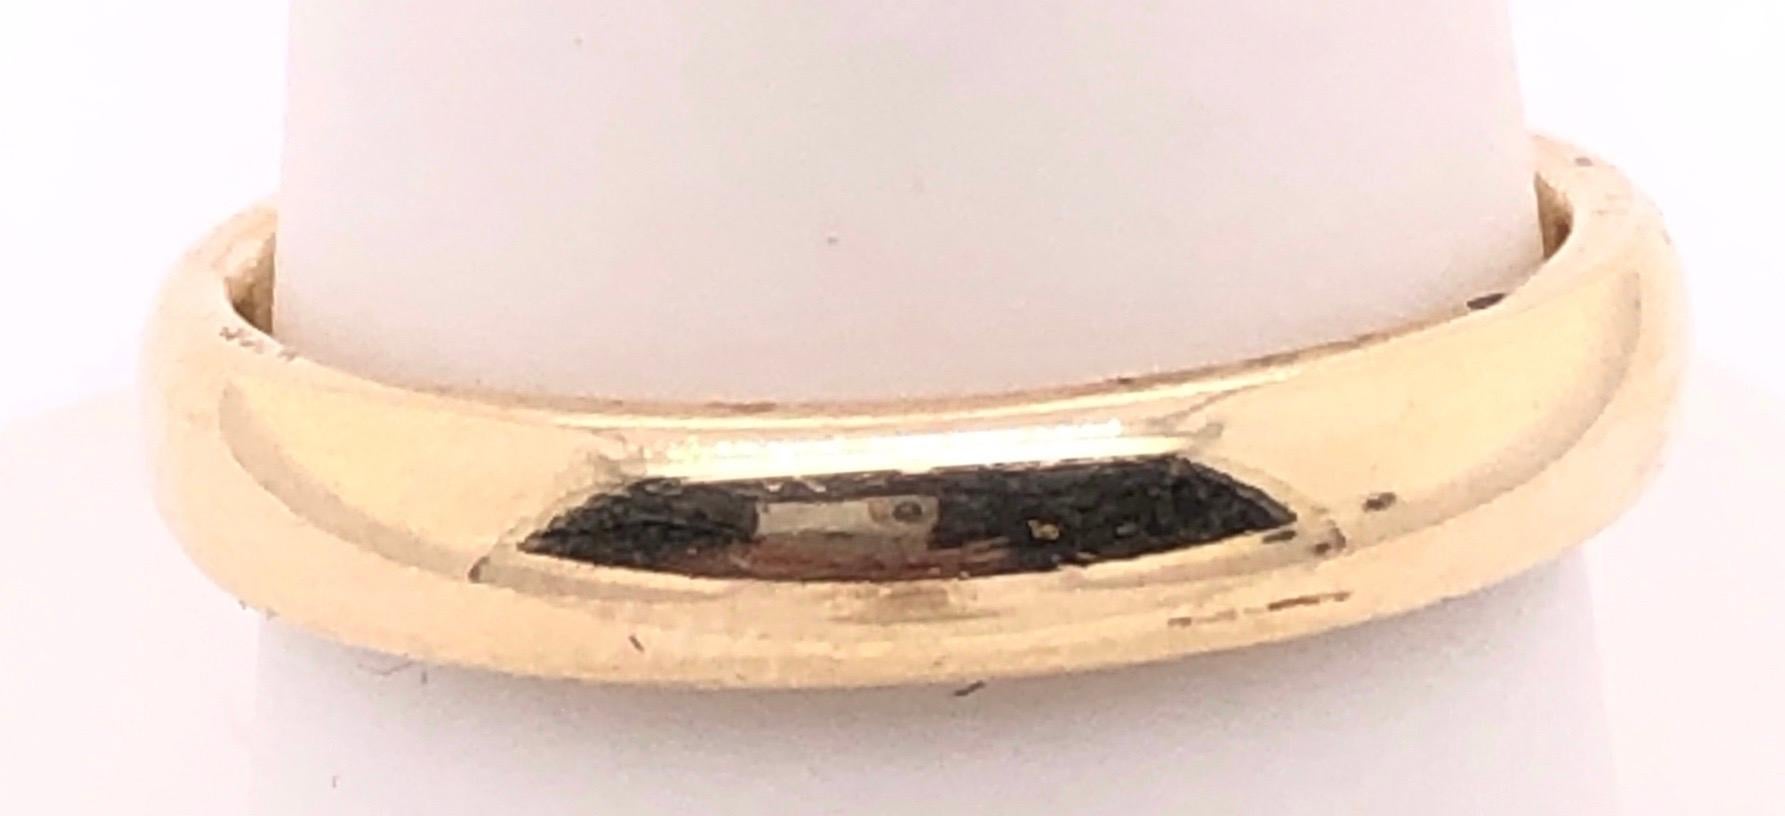 14 Karat Yellow Gold Wedding Ring/Band Size 8.5.
4.5 grams total weight.